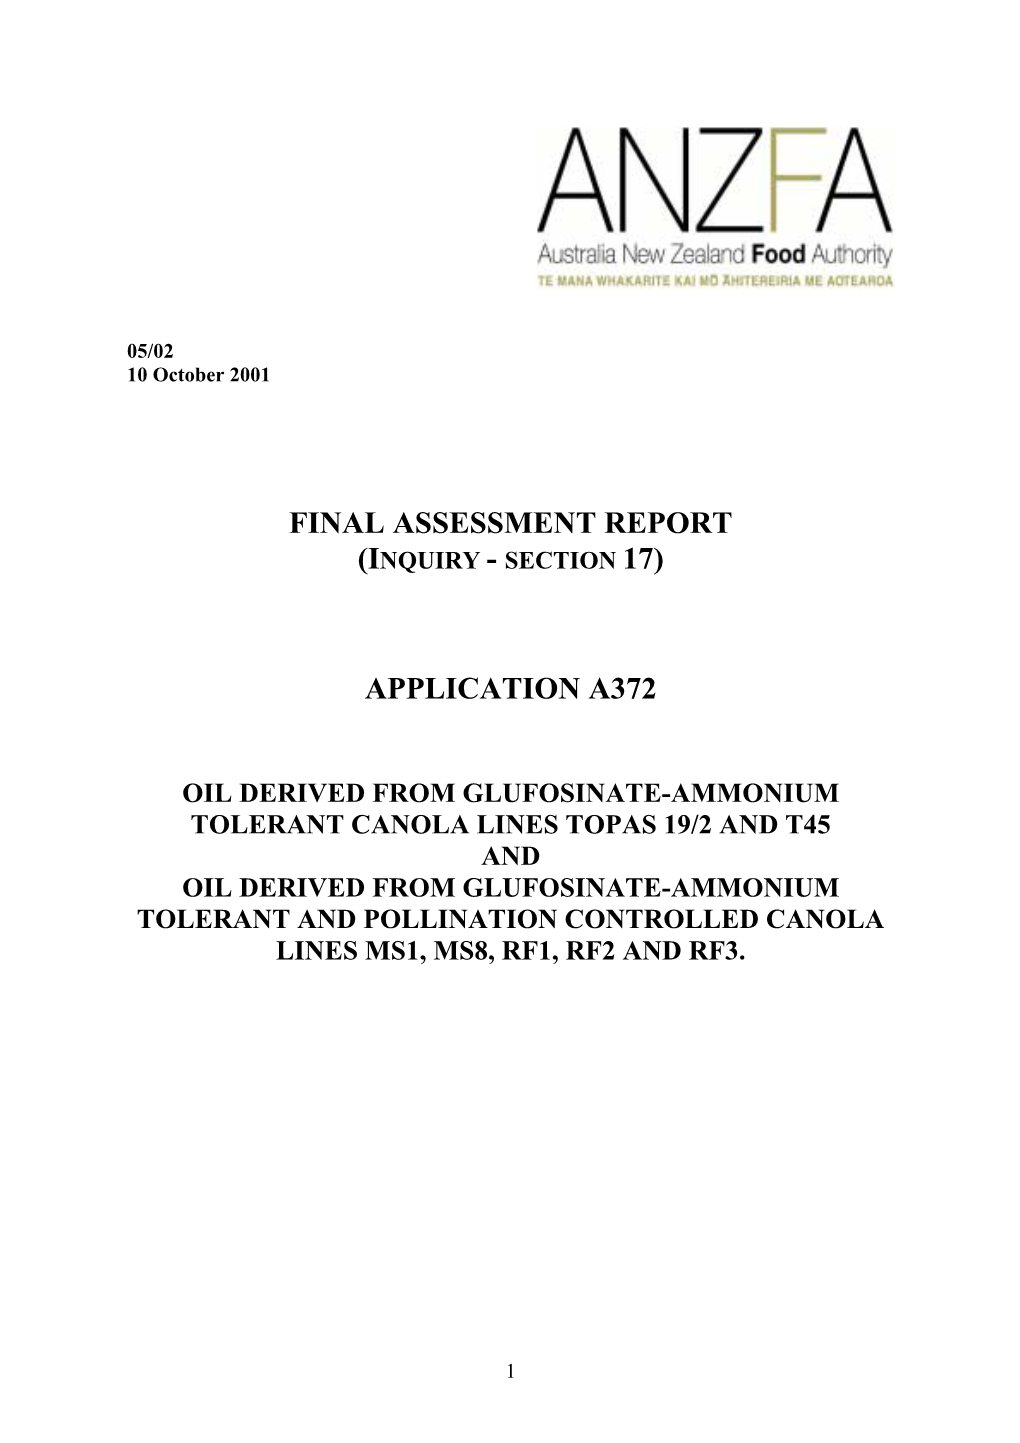 Final Assessment Report Application A372